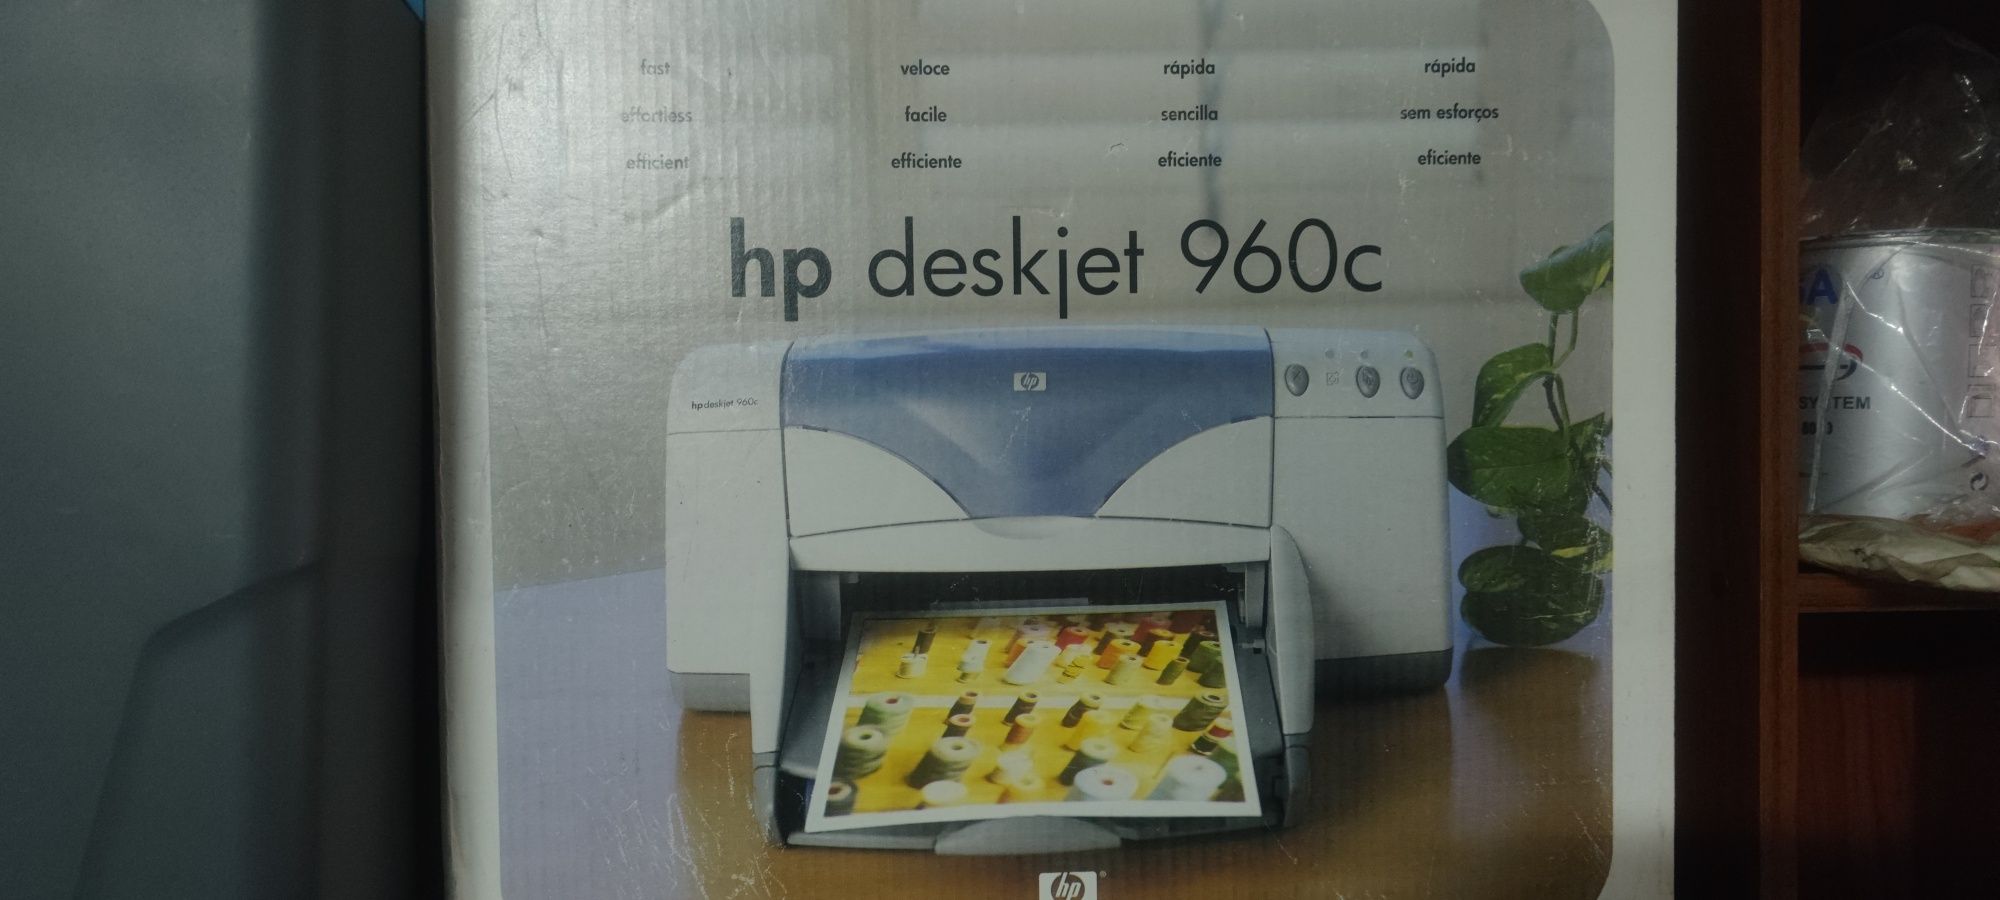 Impressora HP deskjec 960